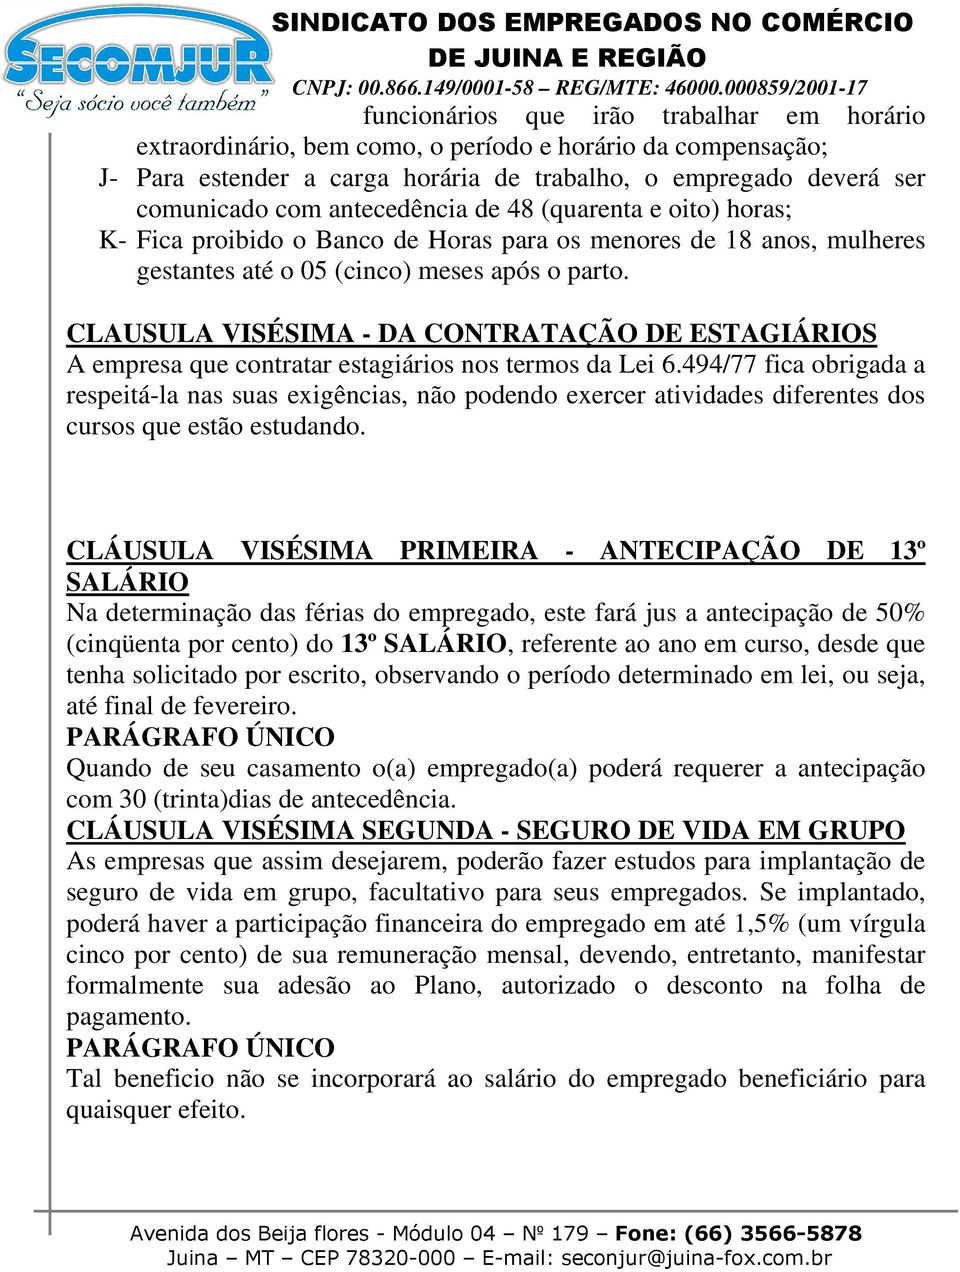 CLAUSULA VISÉSIMA - DA CONTRATAÇÃO DE ESTAGIÁRIOS A empresa que contratar estagiários nos termos da Lei 6.